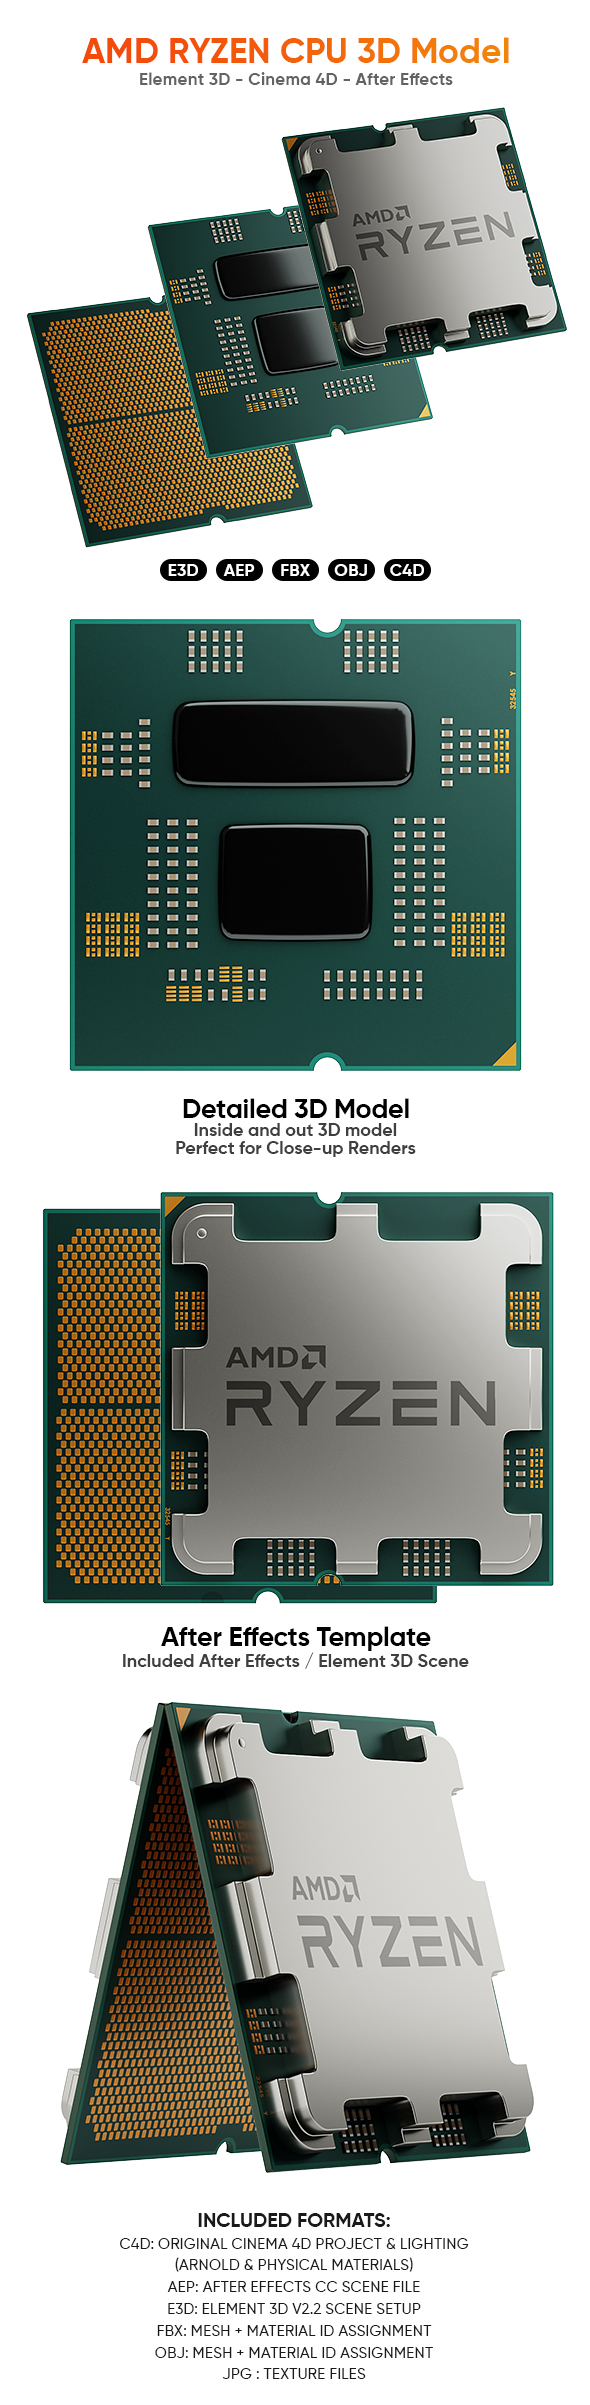 AMD RYZEN 9 CPU Detailed 3D Model for Element 3D & Cinema 4D